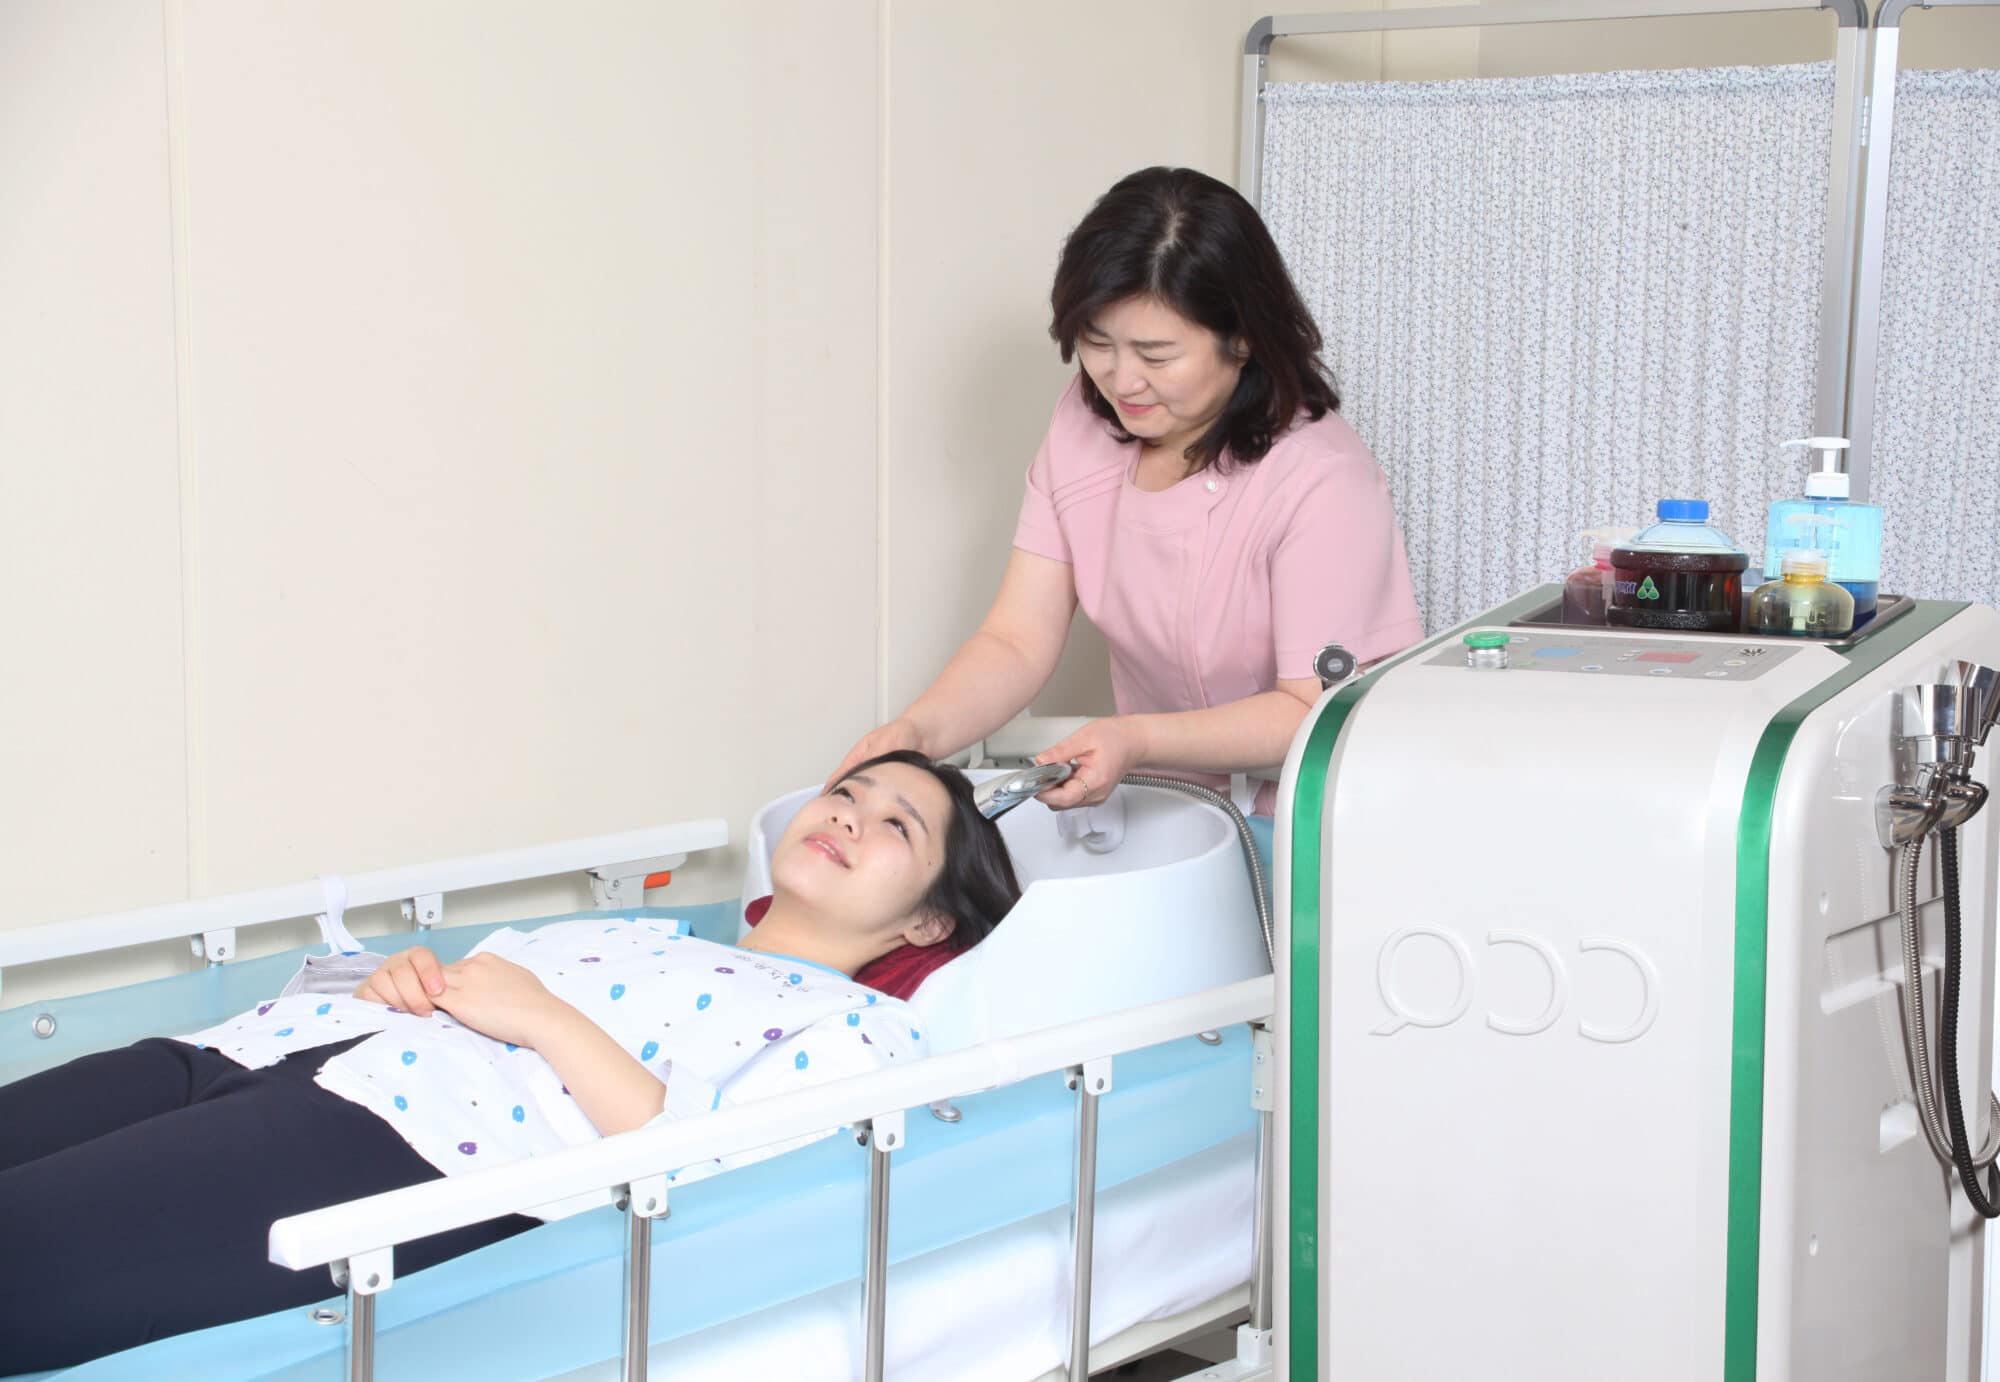 제품사진 1 HanMaek Medical’s “Moving Bed Shower Carrier”, a necessity for nursing care